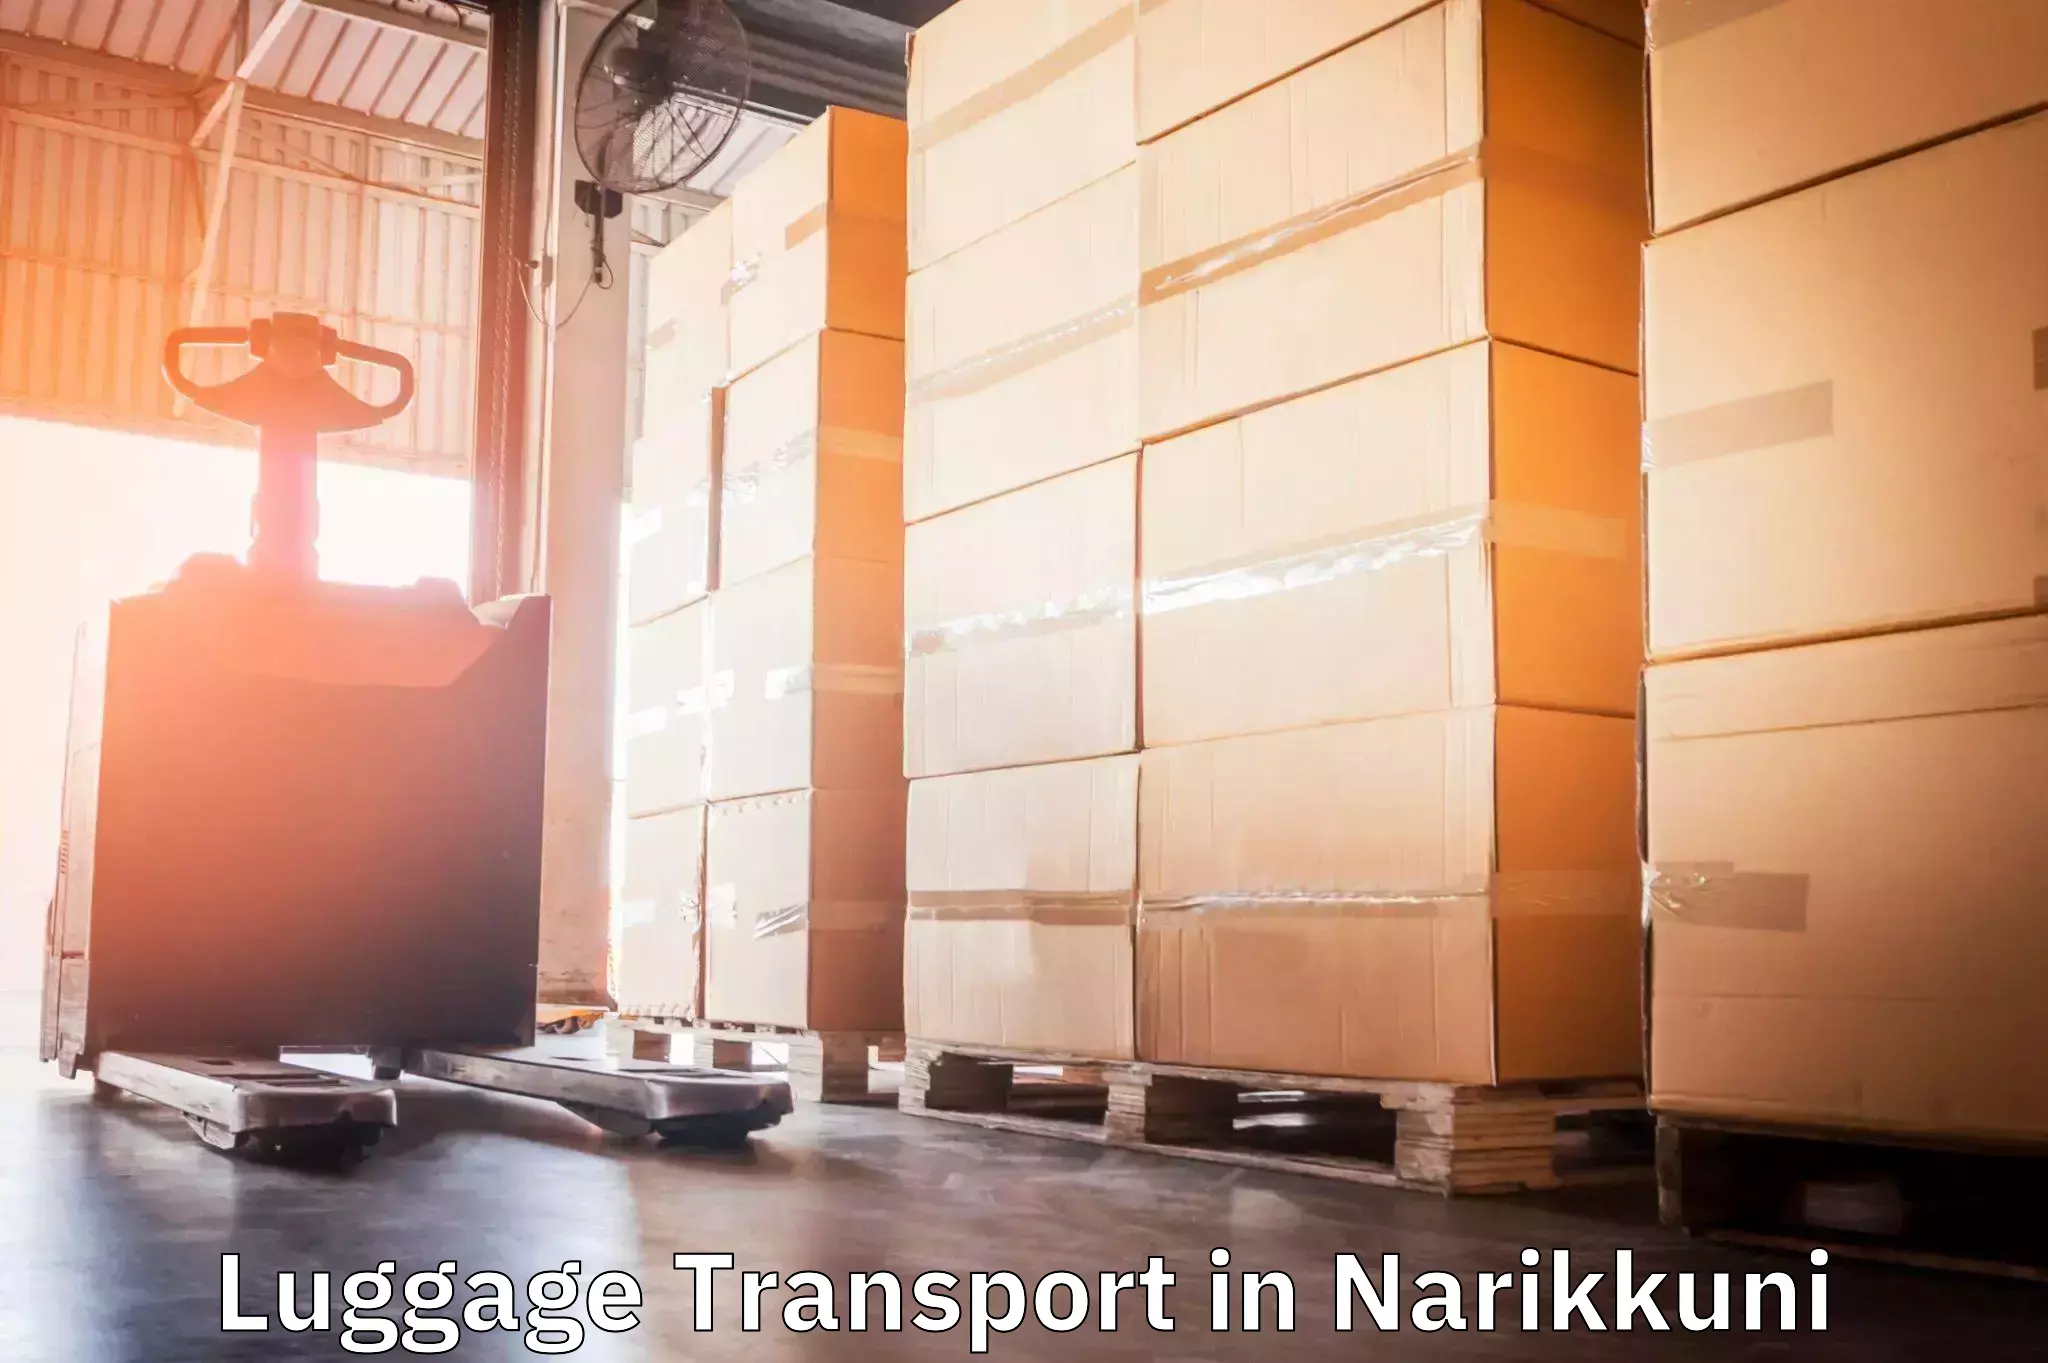 Urban luggage shipping in Narikkuni